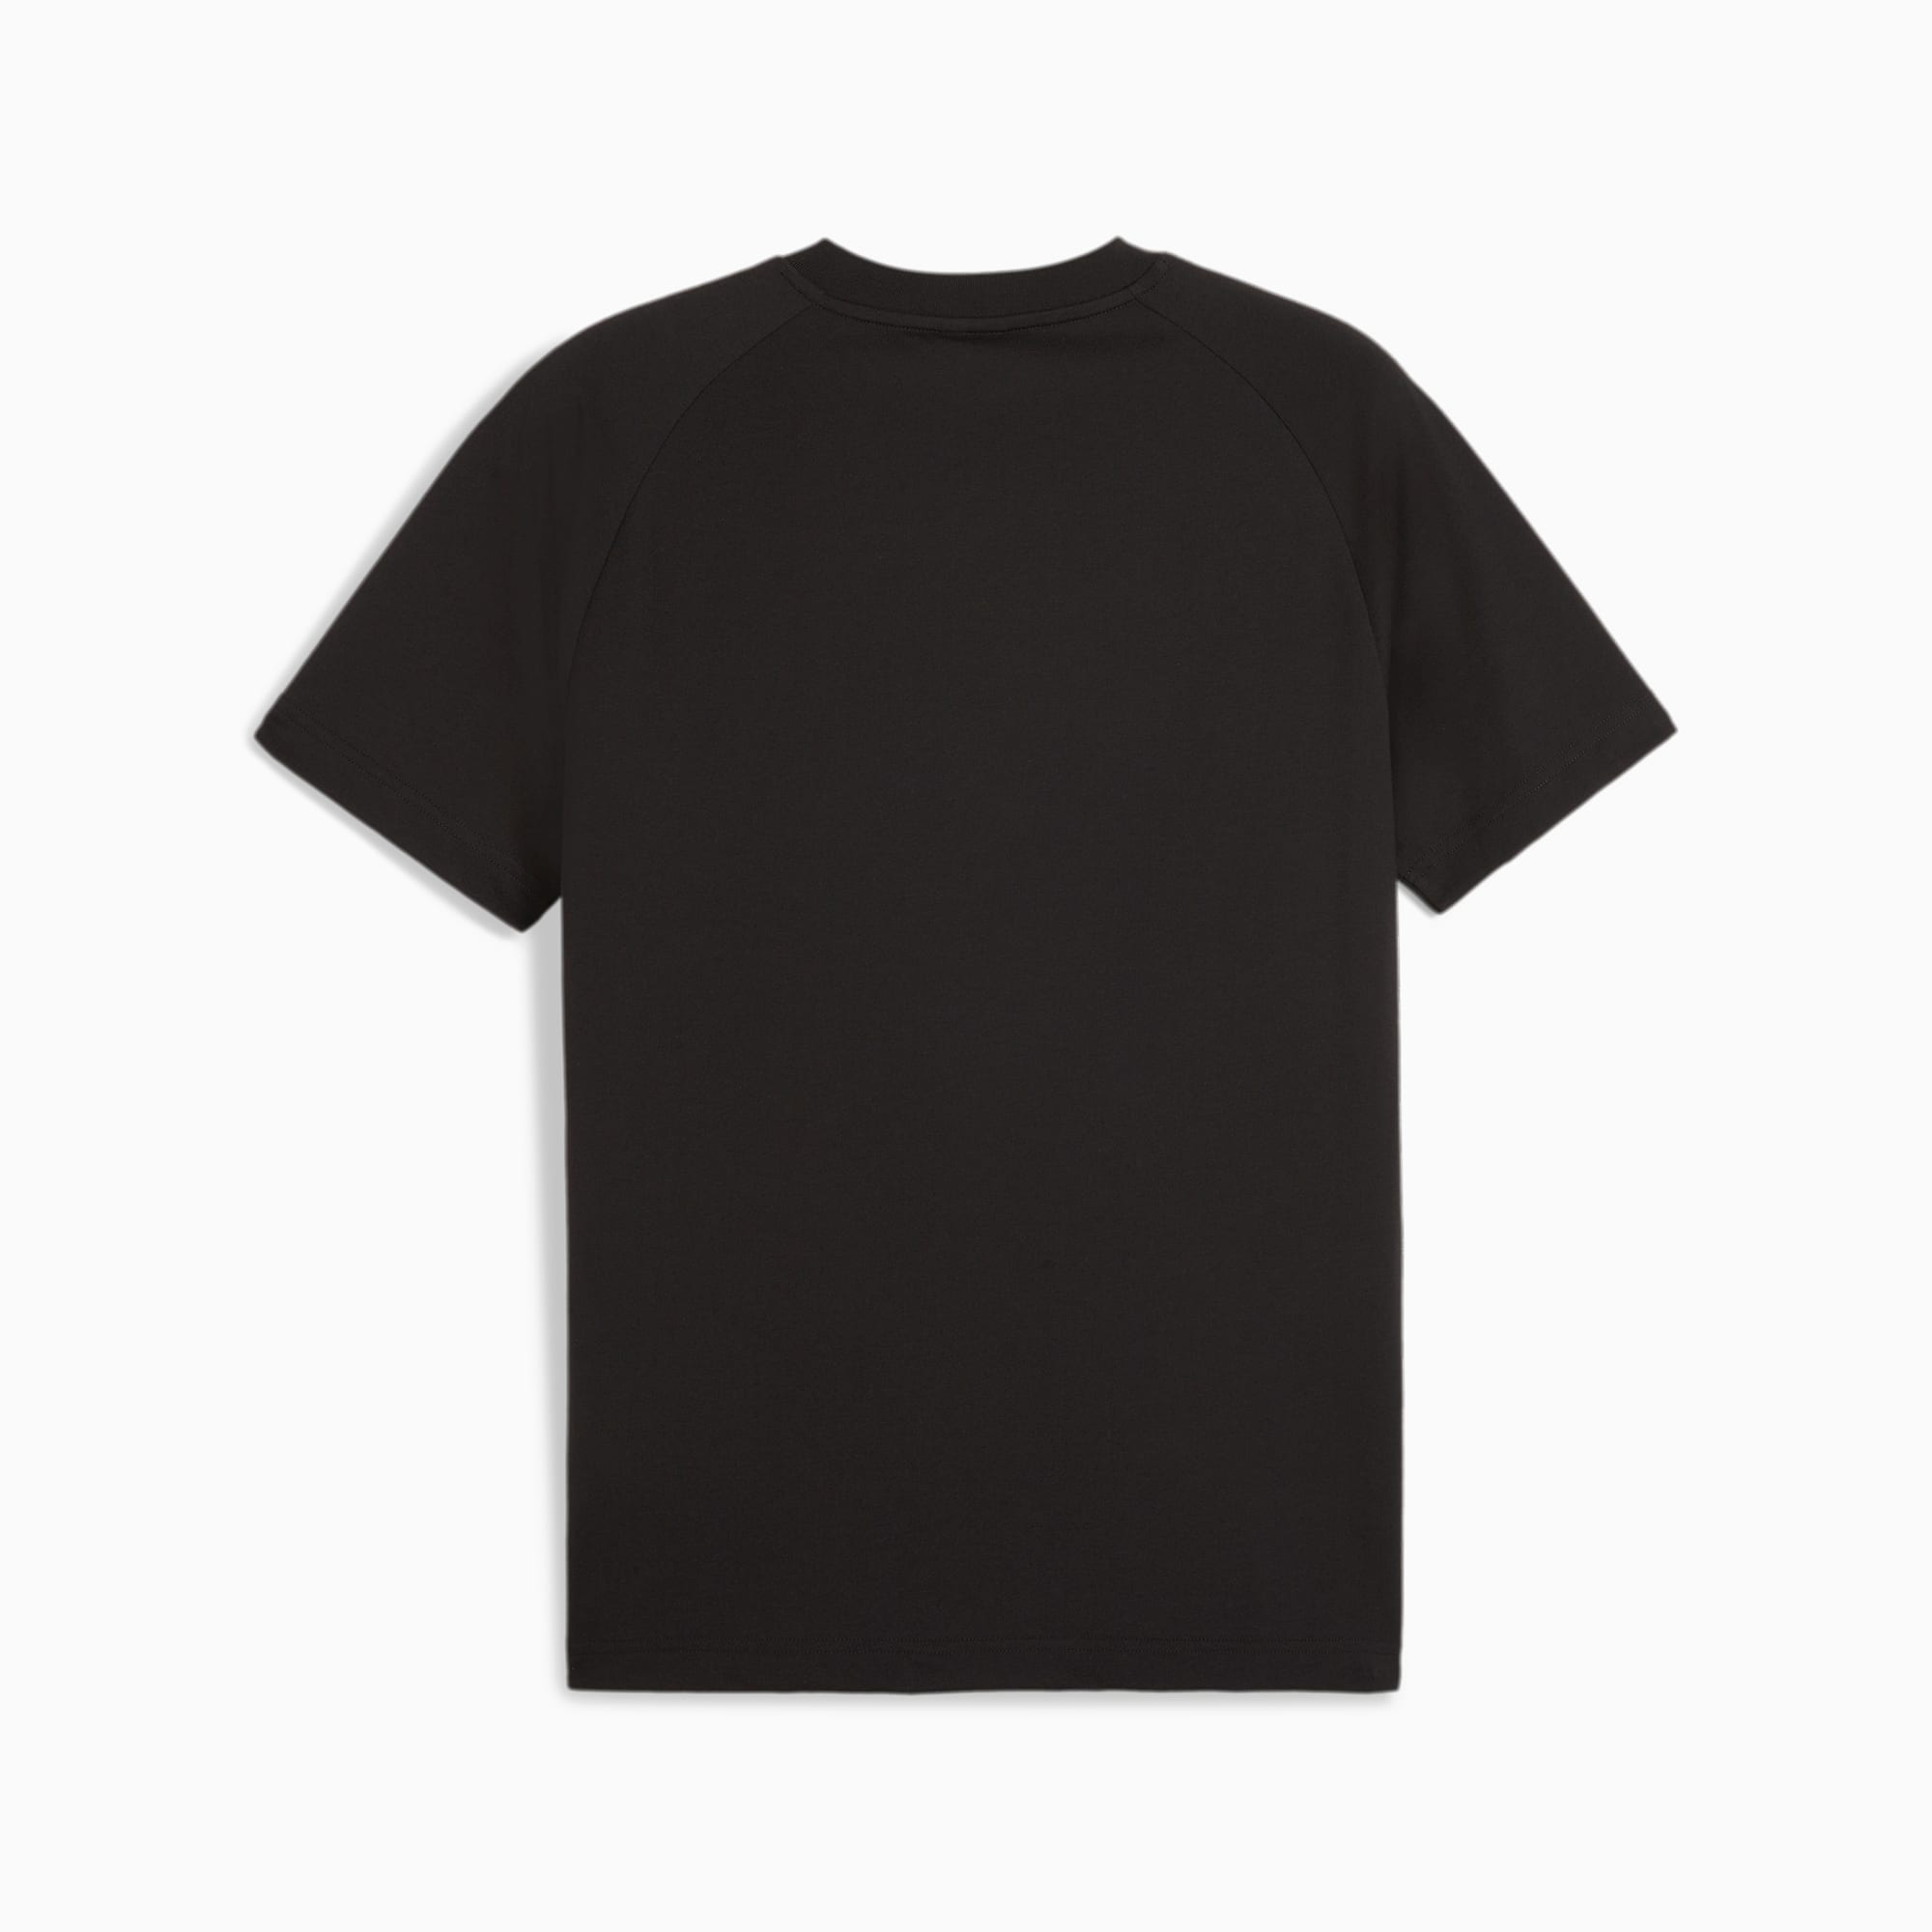 PUMATECH T-Shirt Mit Tasche Herren, Schwarz, Größe: S, Kleidung